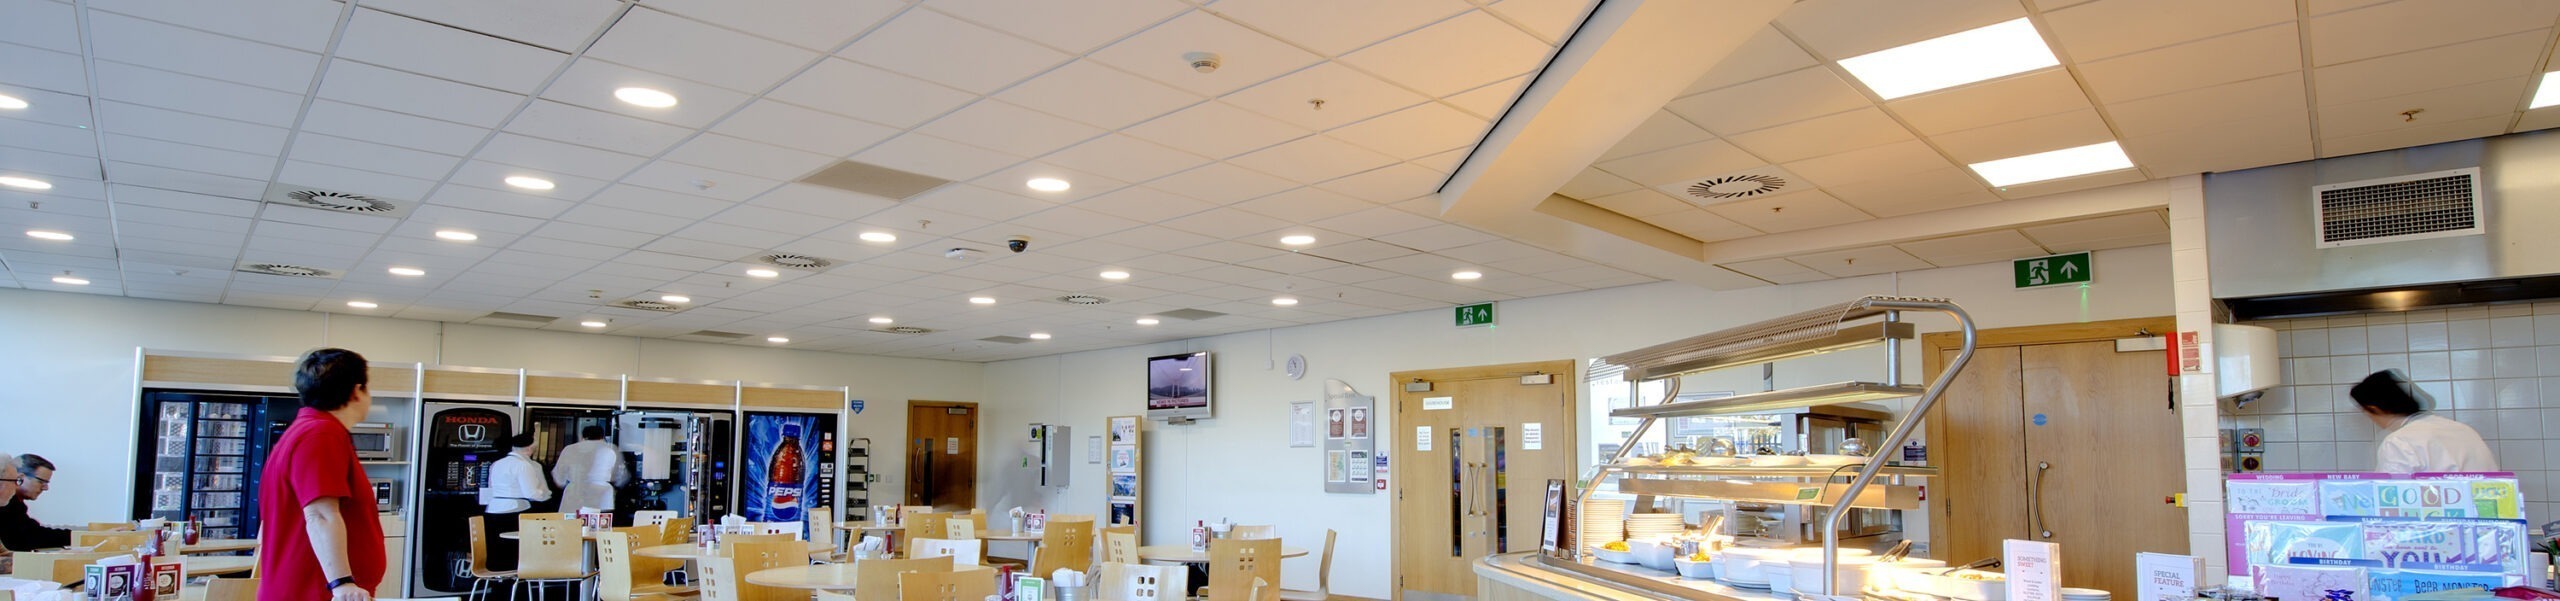 Tamlite Honda Logistics Swindon residential LED lighting case study header